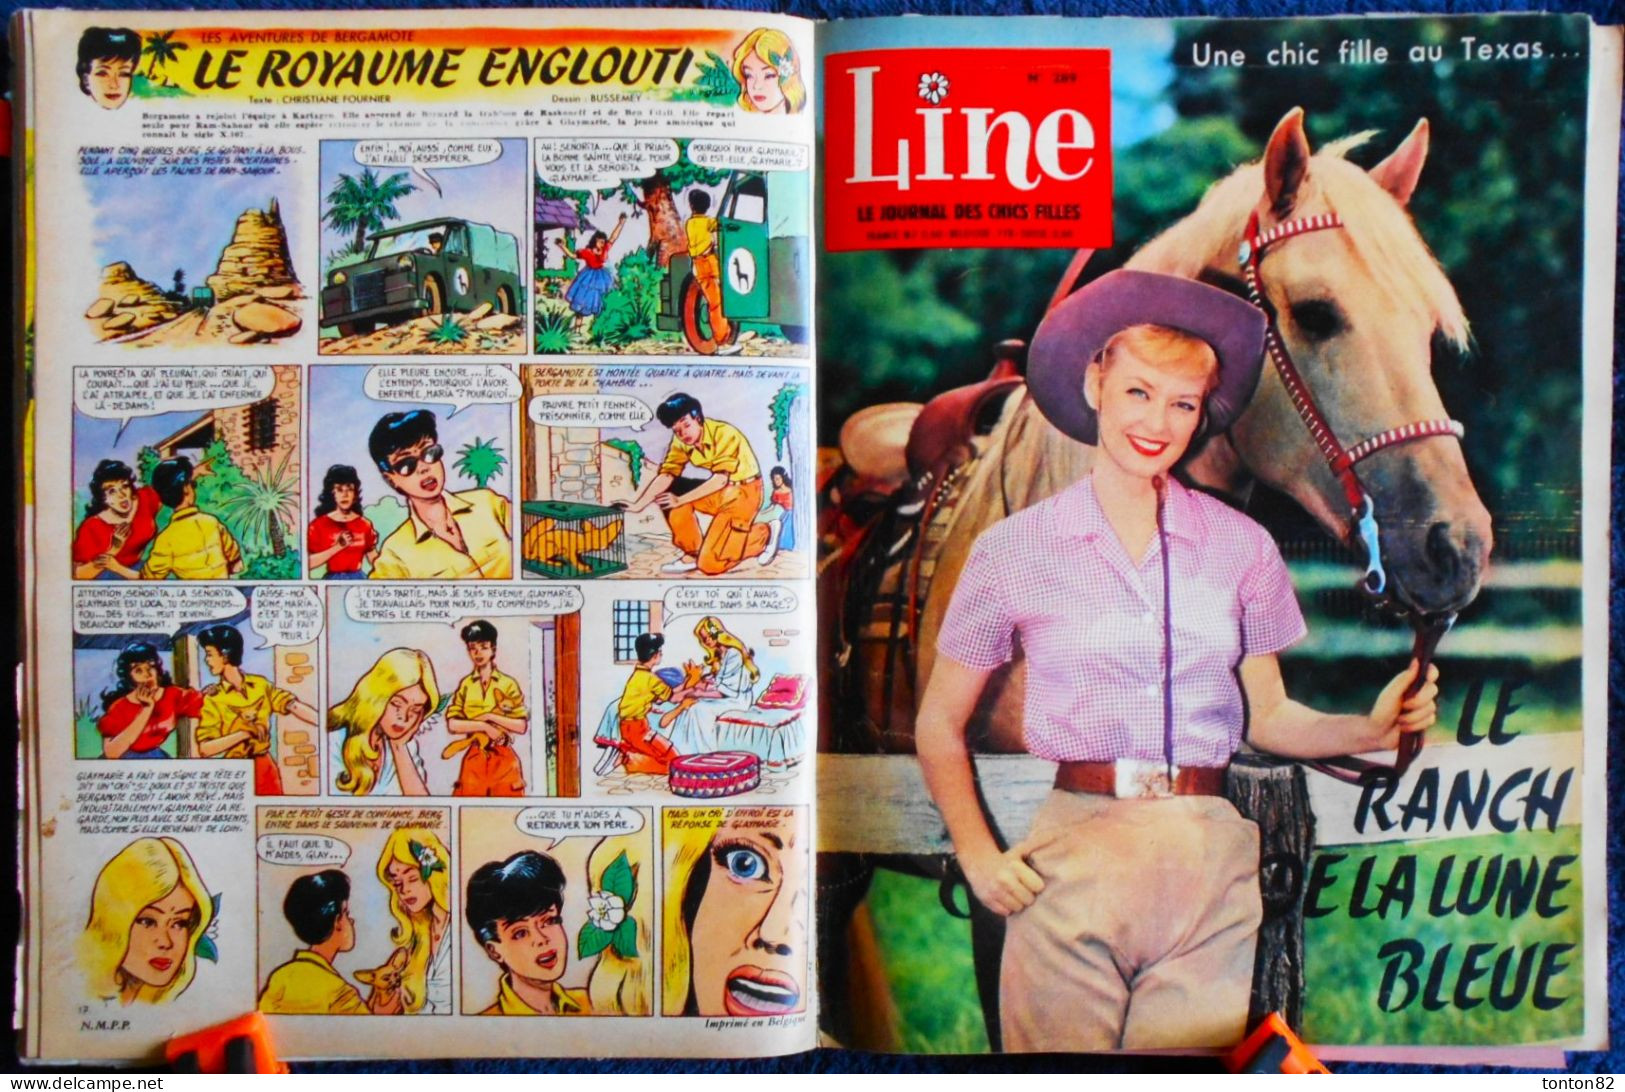 LINE - Le Journal des Chics Filles - Recueil n° 21 - ( 1960 ) - 12 Numéros .